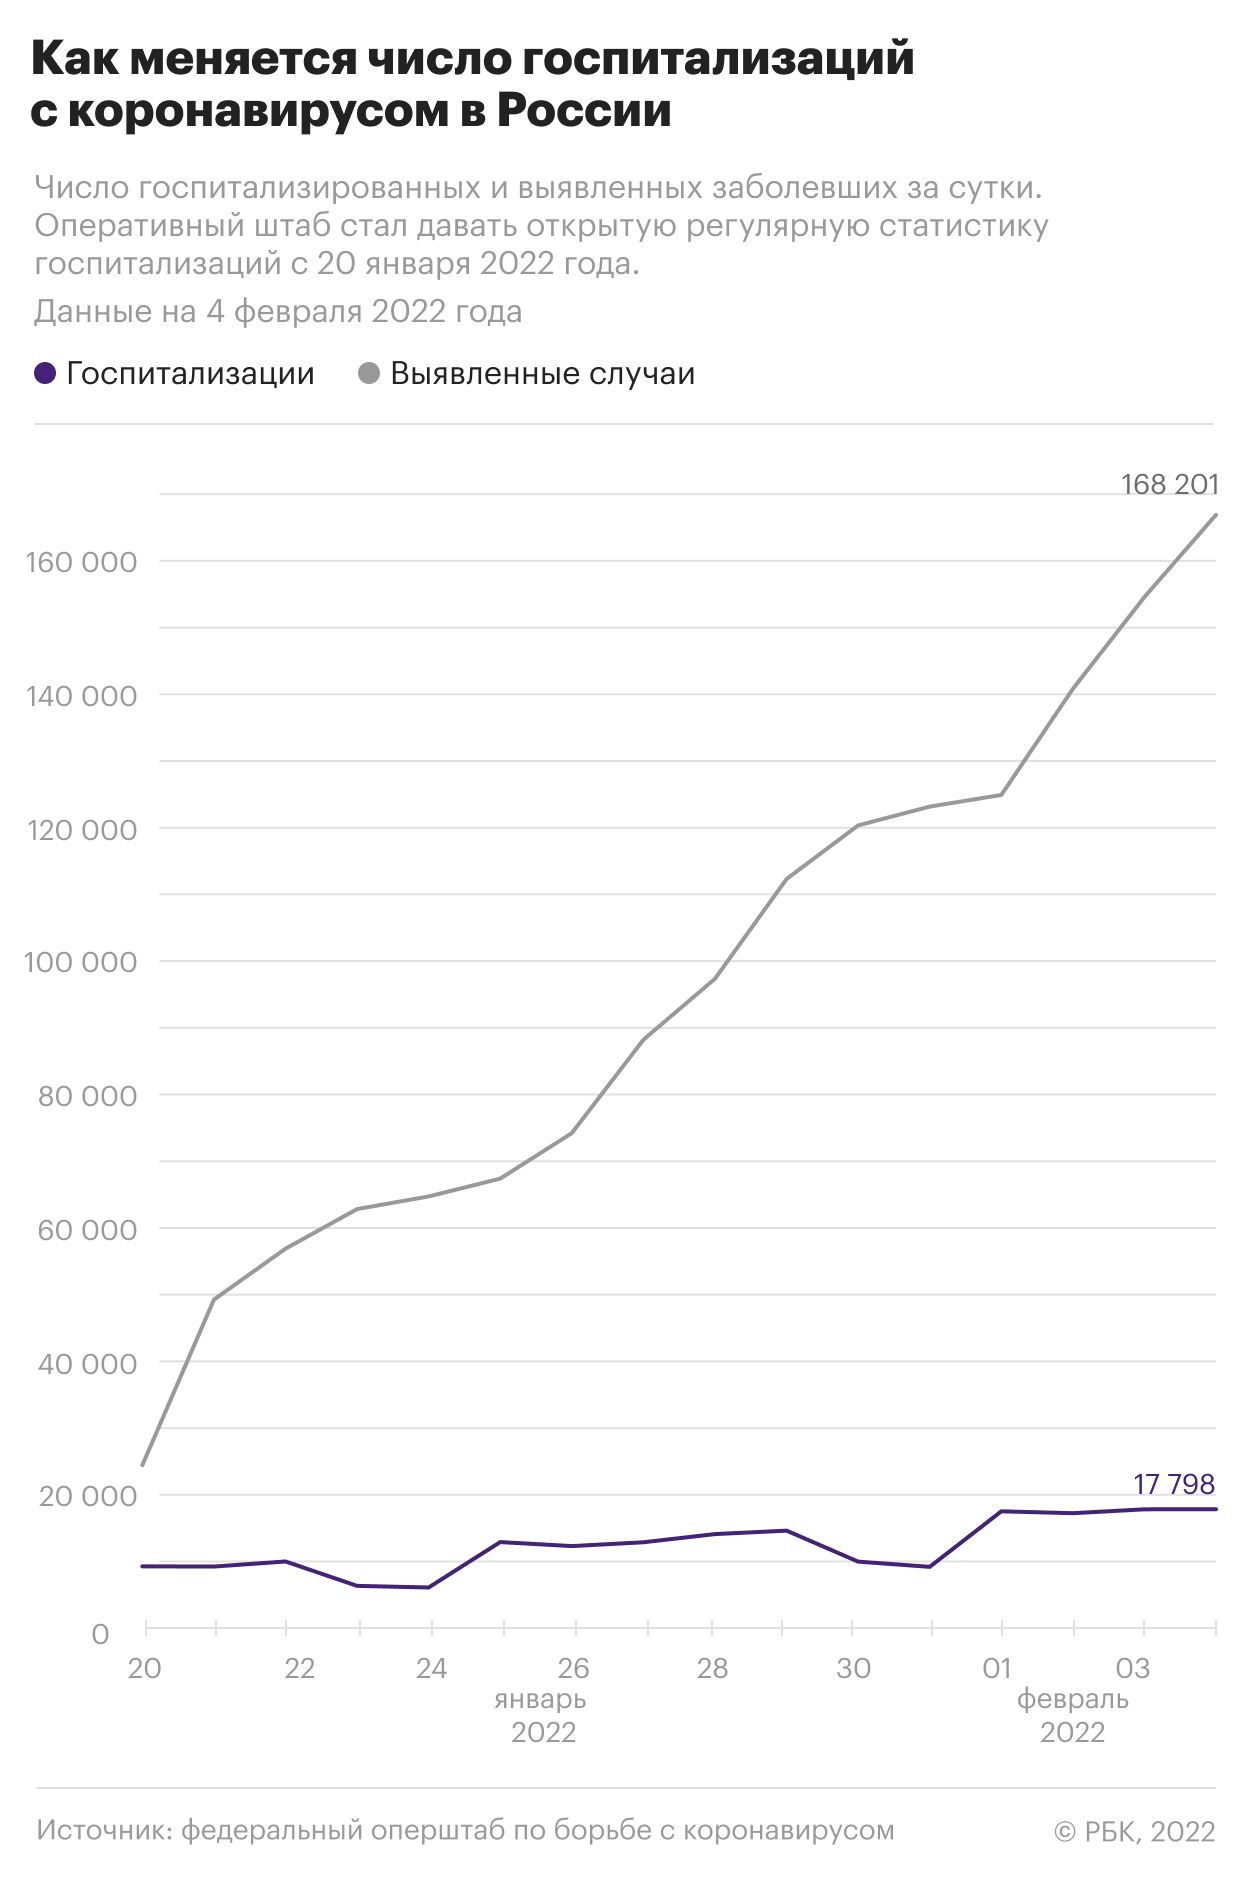 В России выявили почти 170 тыс. случаев COVID при 17 тыс. госпитализаций